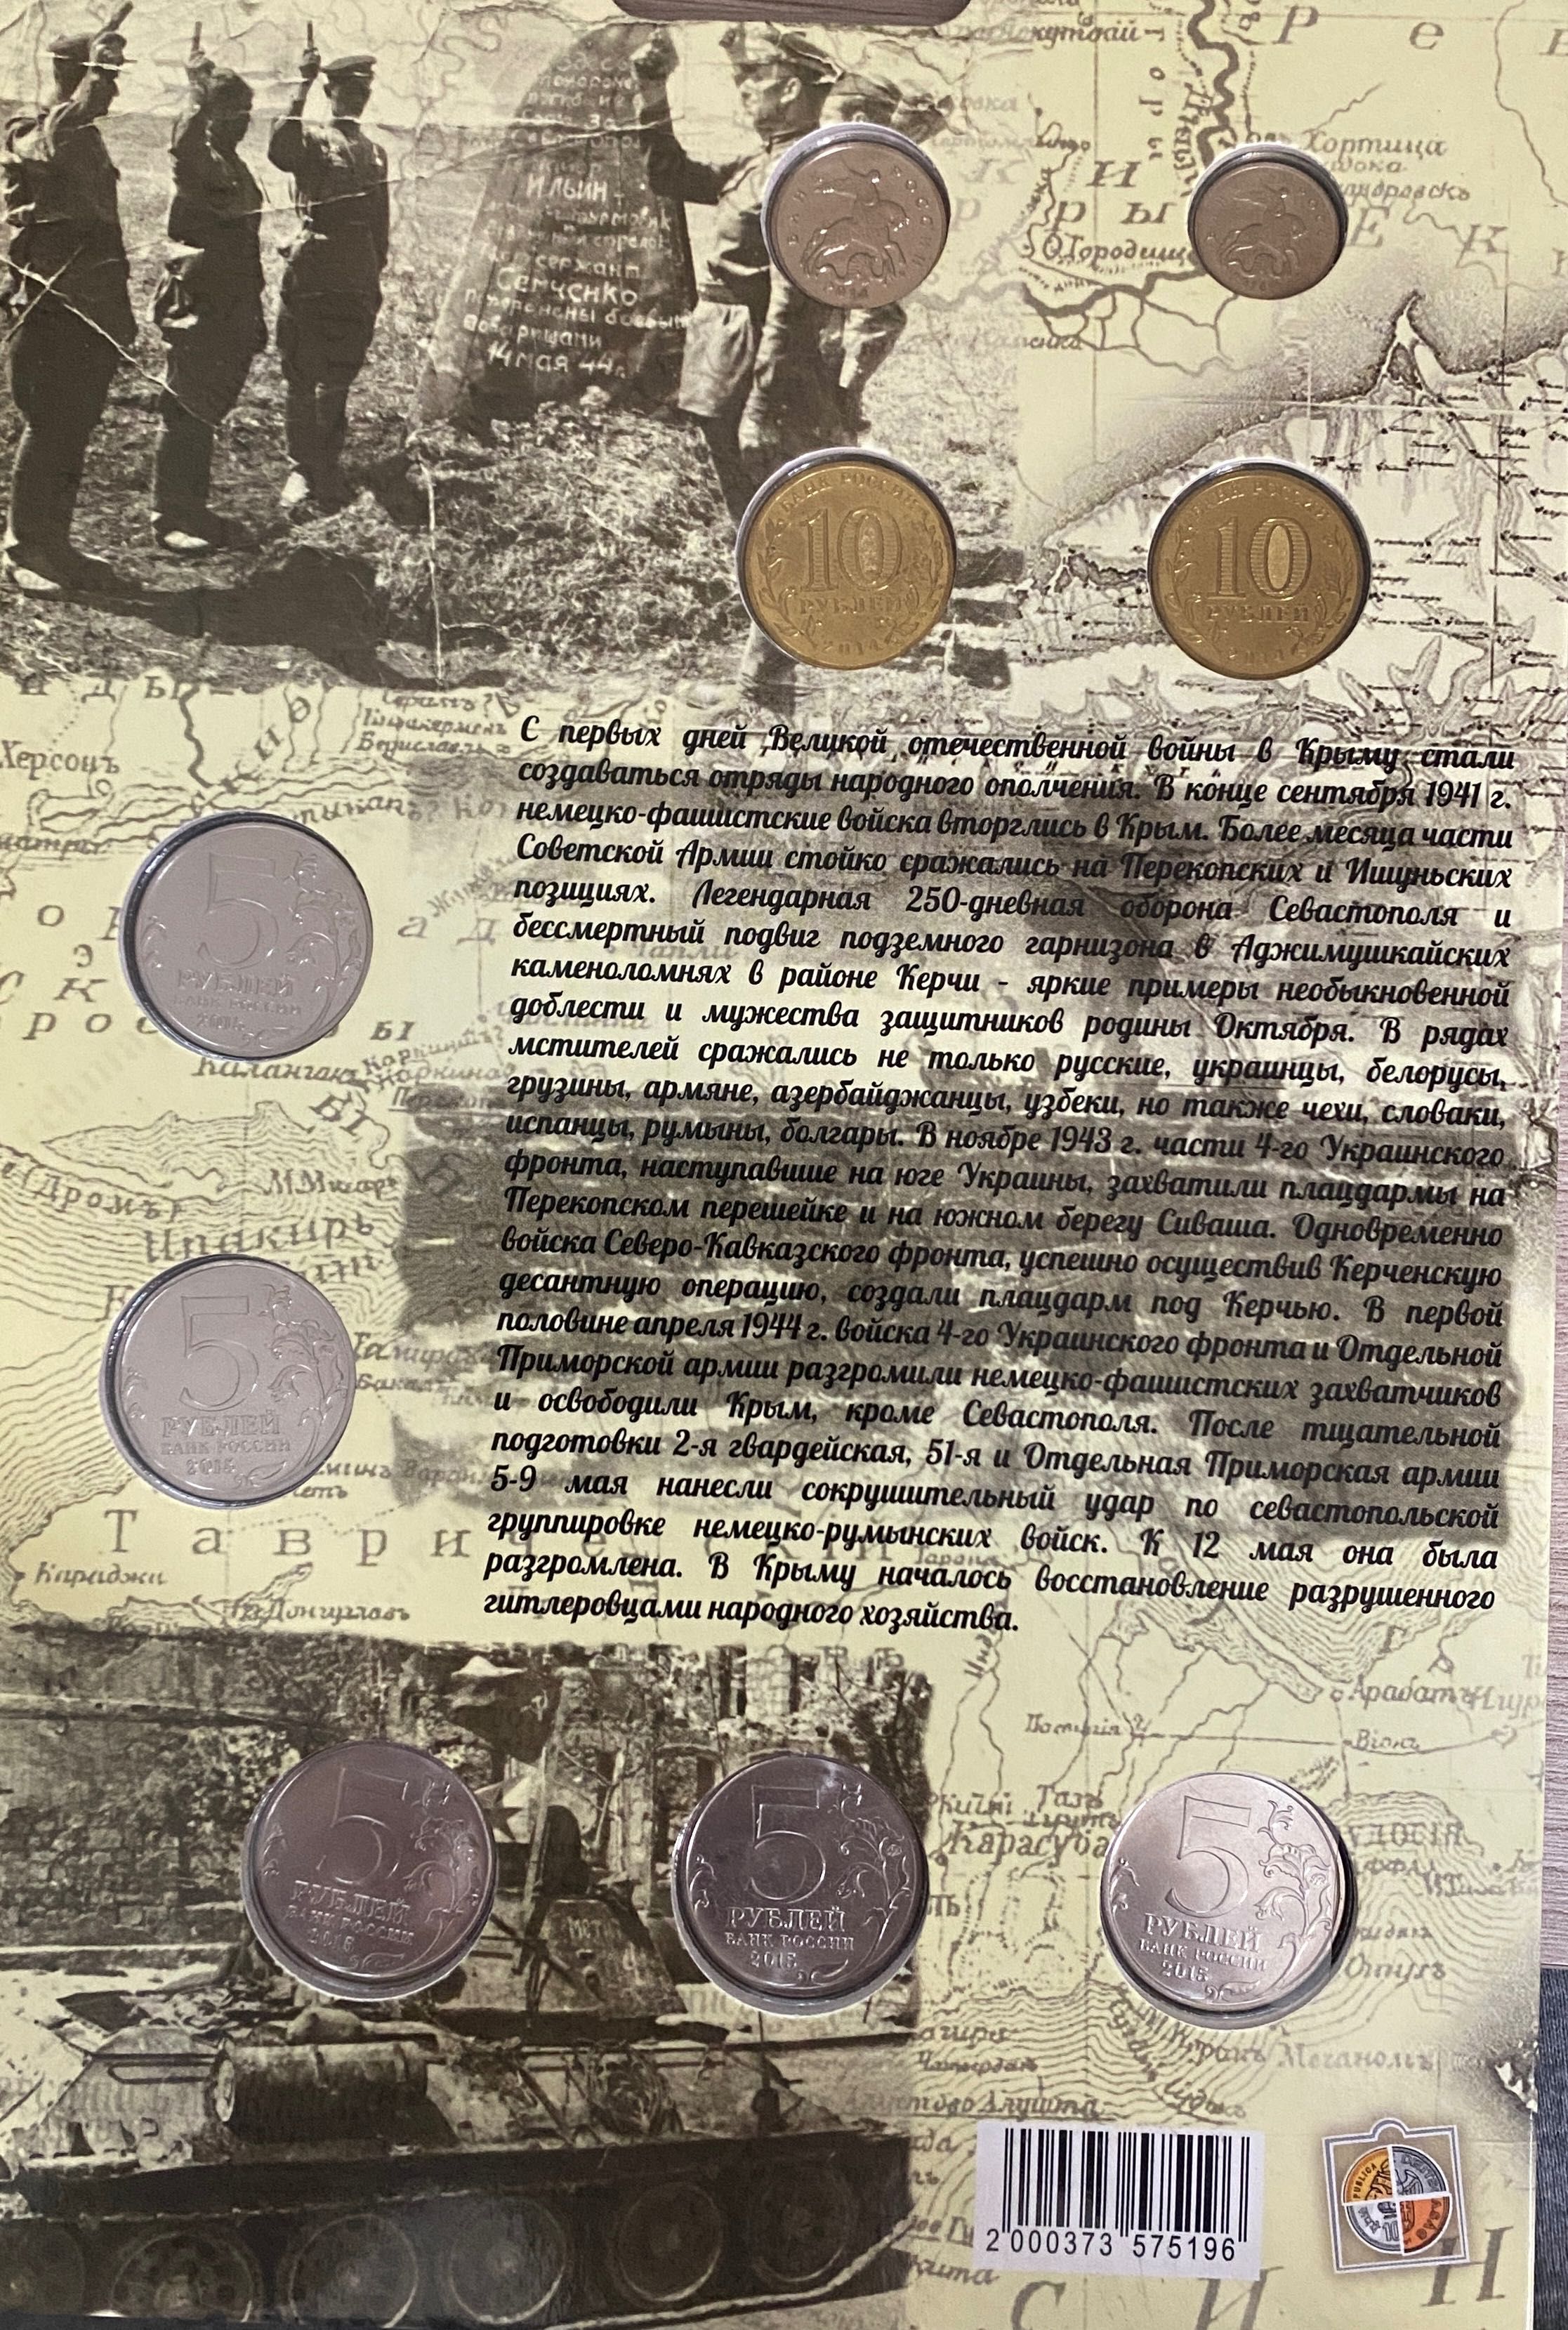 Альбом, 9 монет, 1 банкнота. Полуостров Крым и город Севастополь.